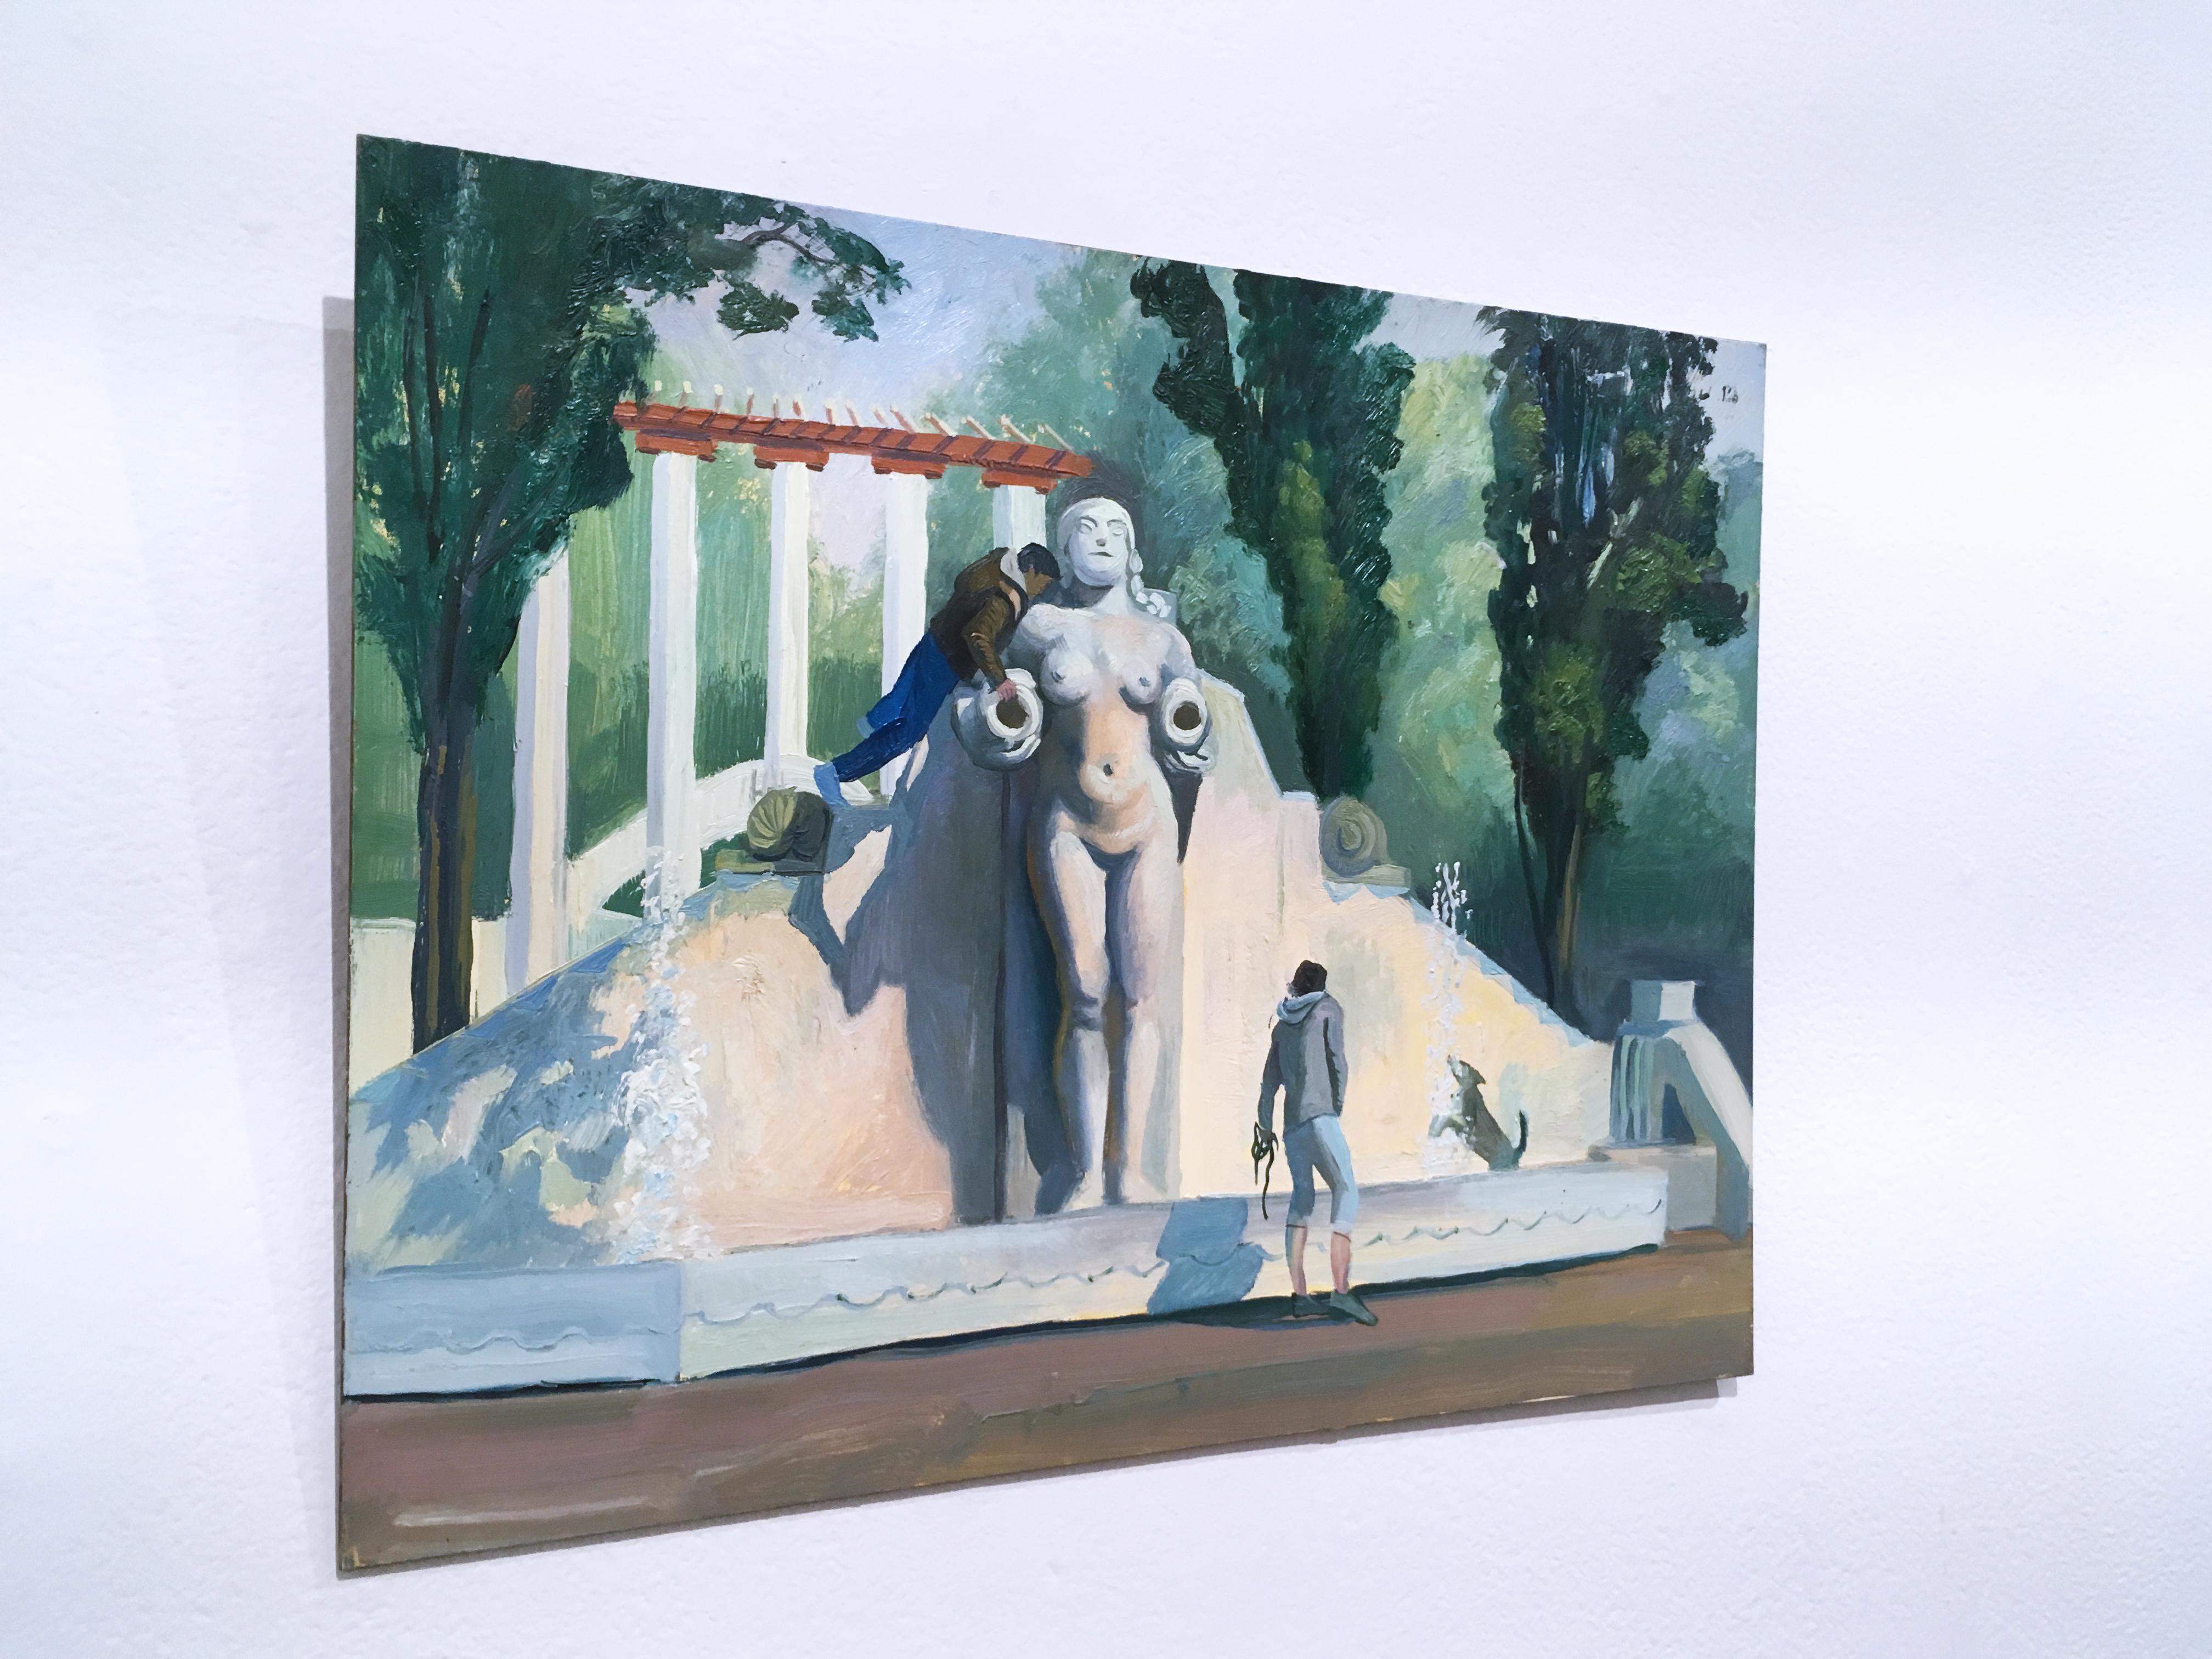 Mexico City 2, paysage figuratif en plein air, huile sur panneau, 2018 - Gris Figurative Painting par Thomas John Carlson